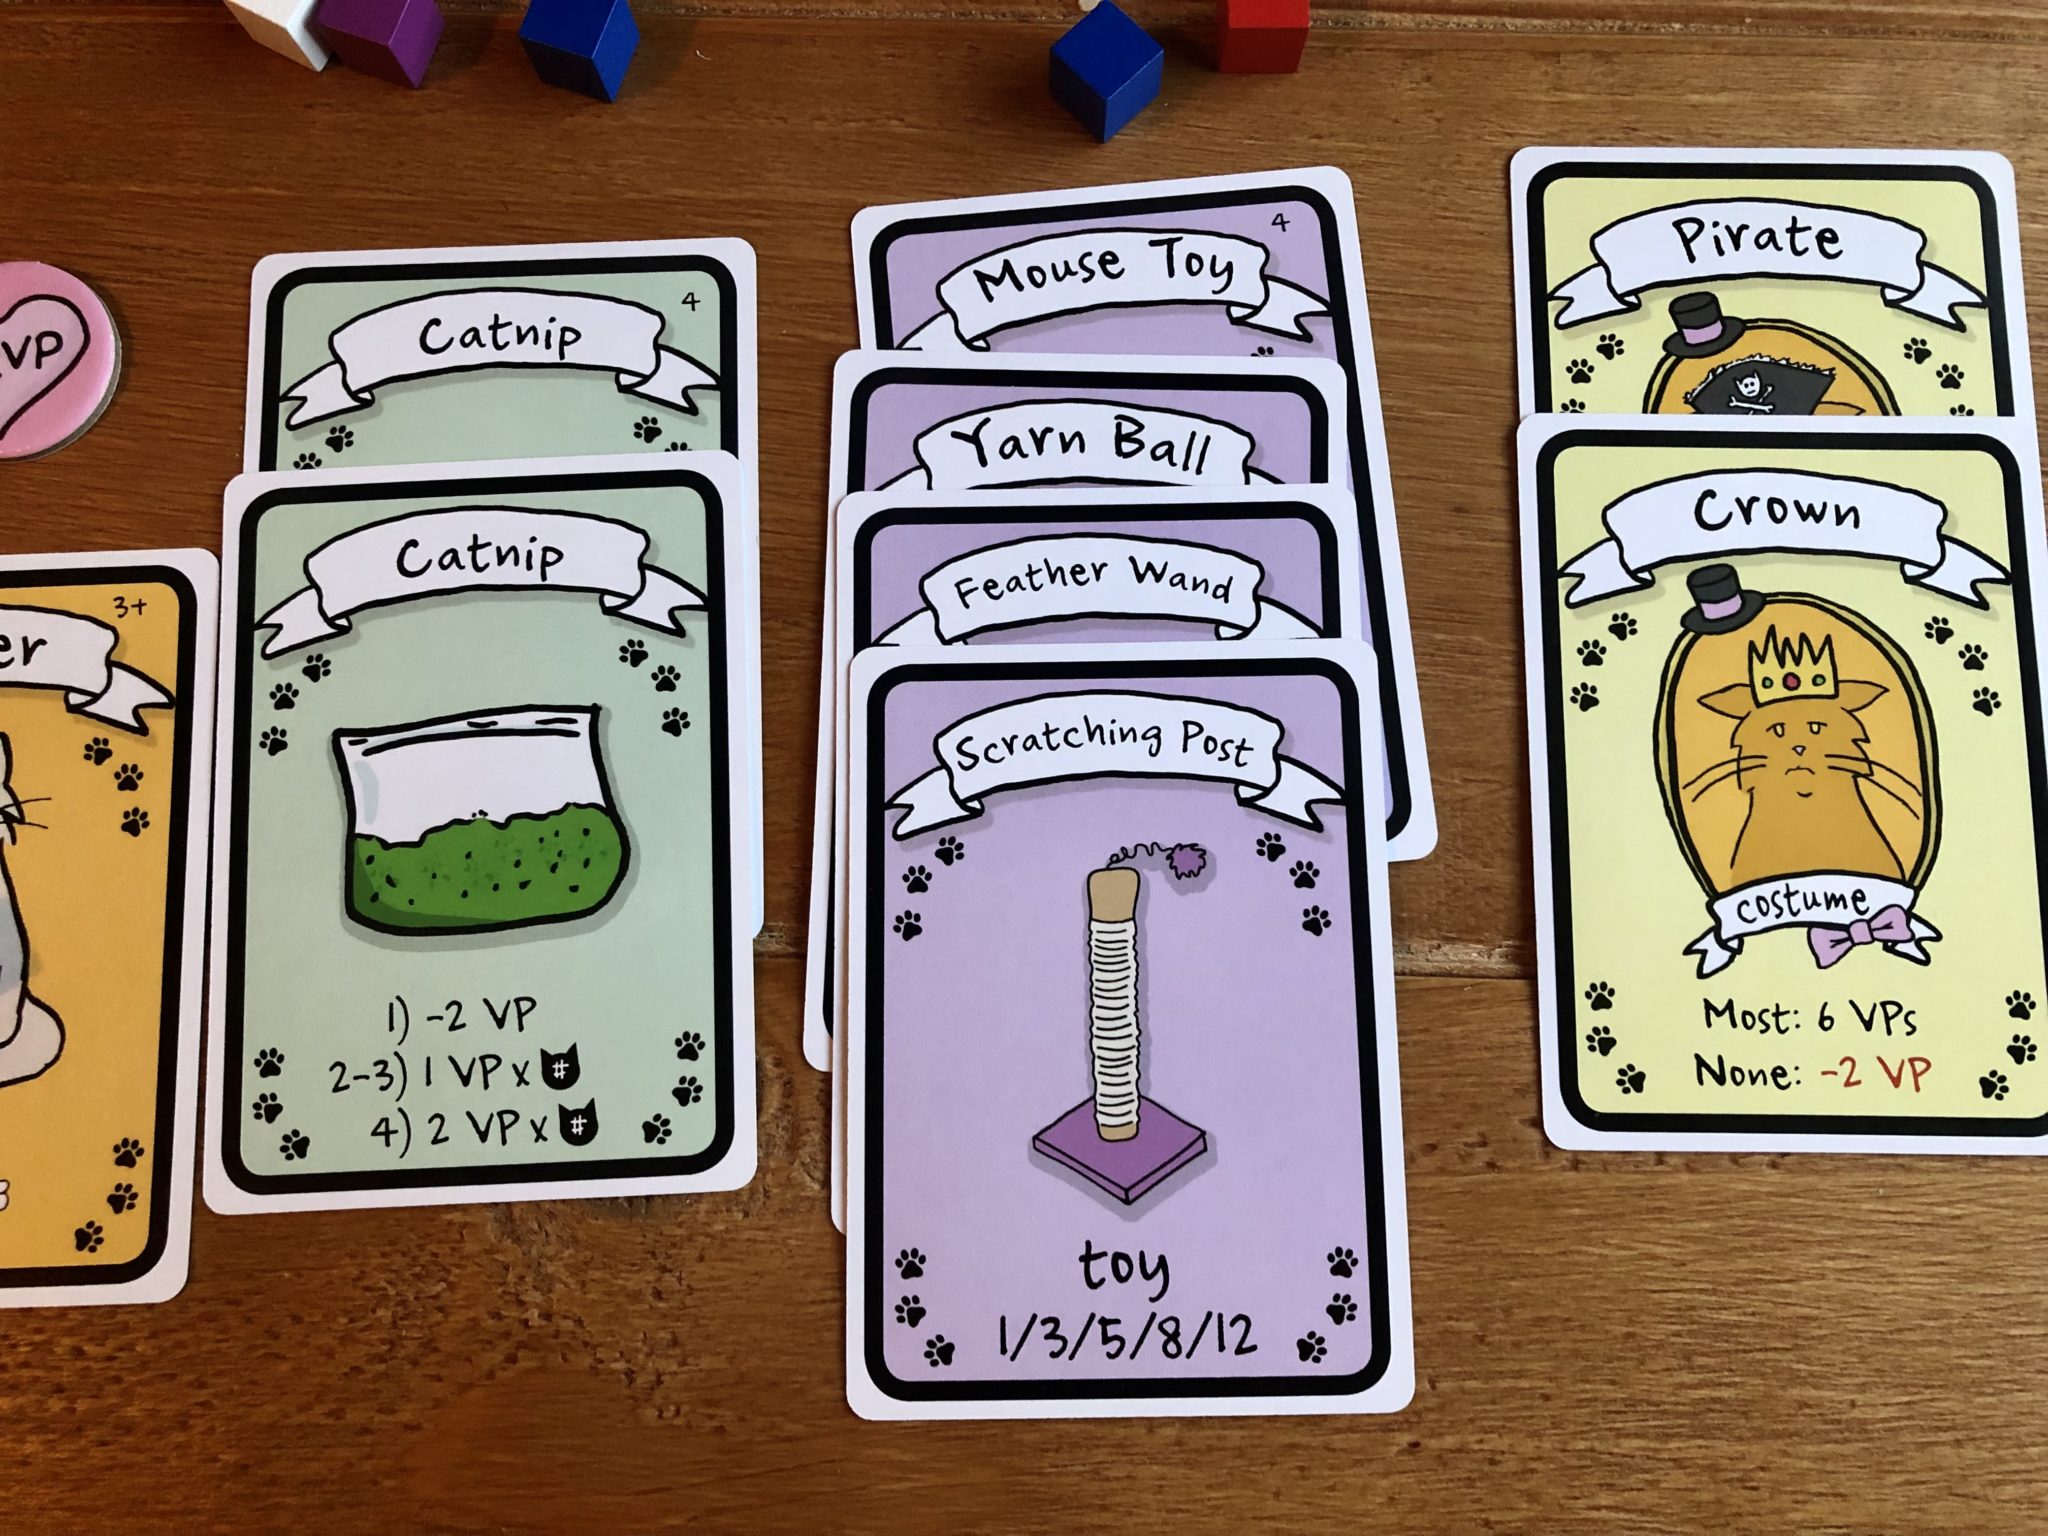 bonus cards in cat lady